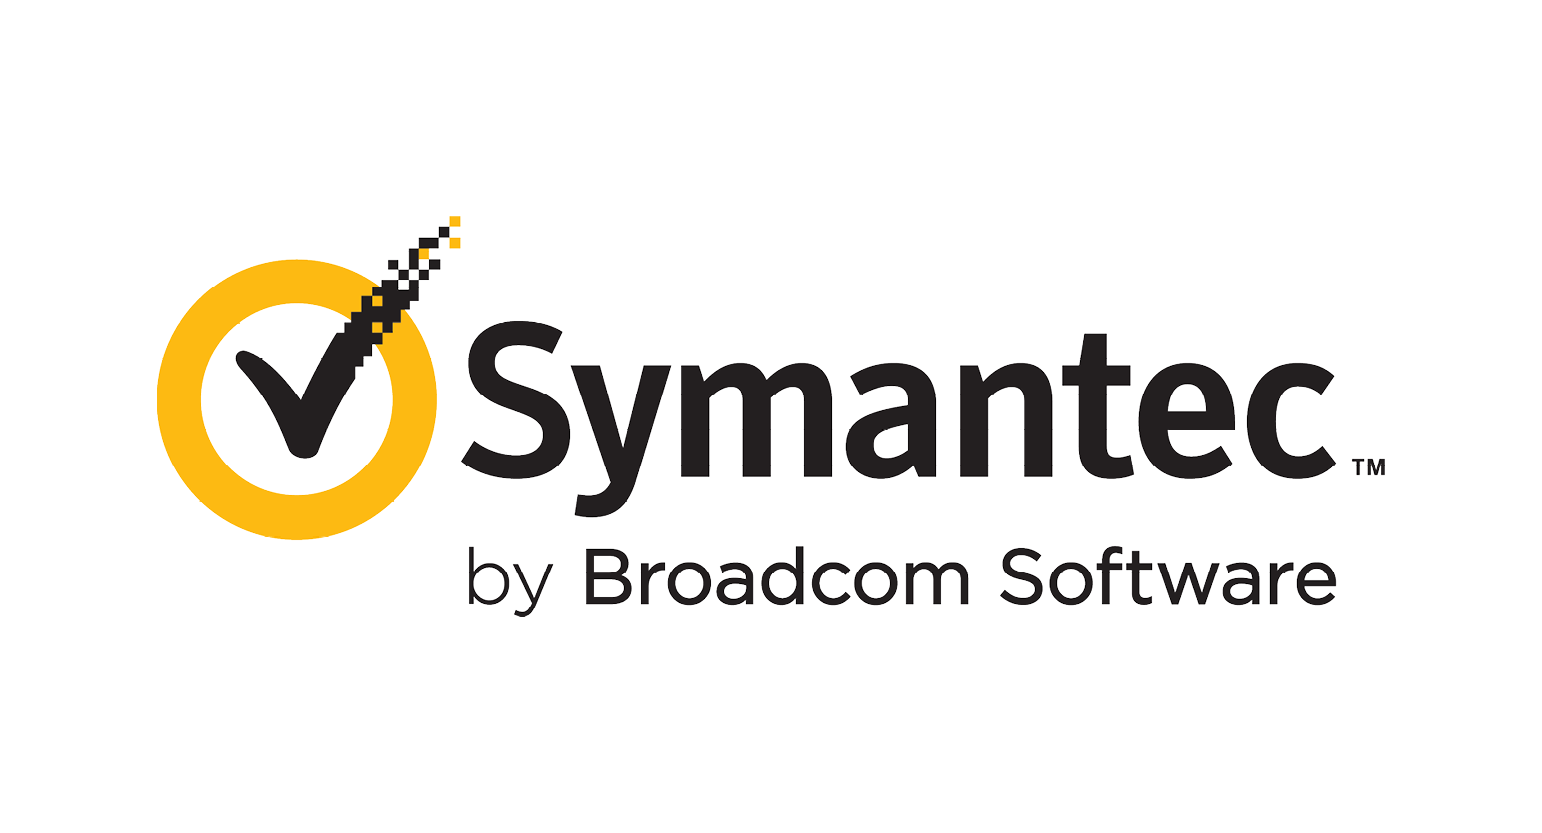 Symantec by Broadcom Software Group Logo